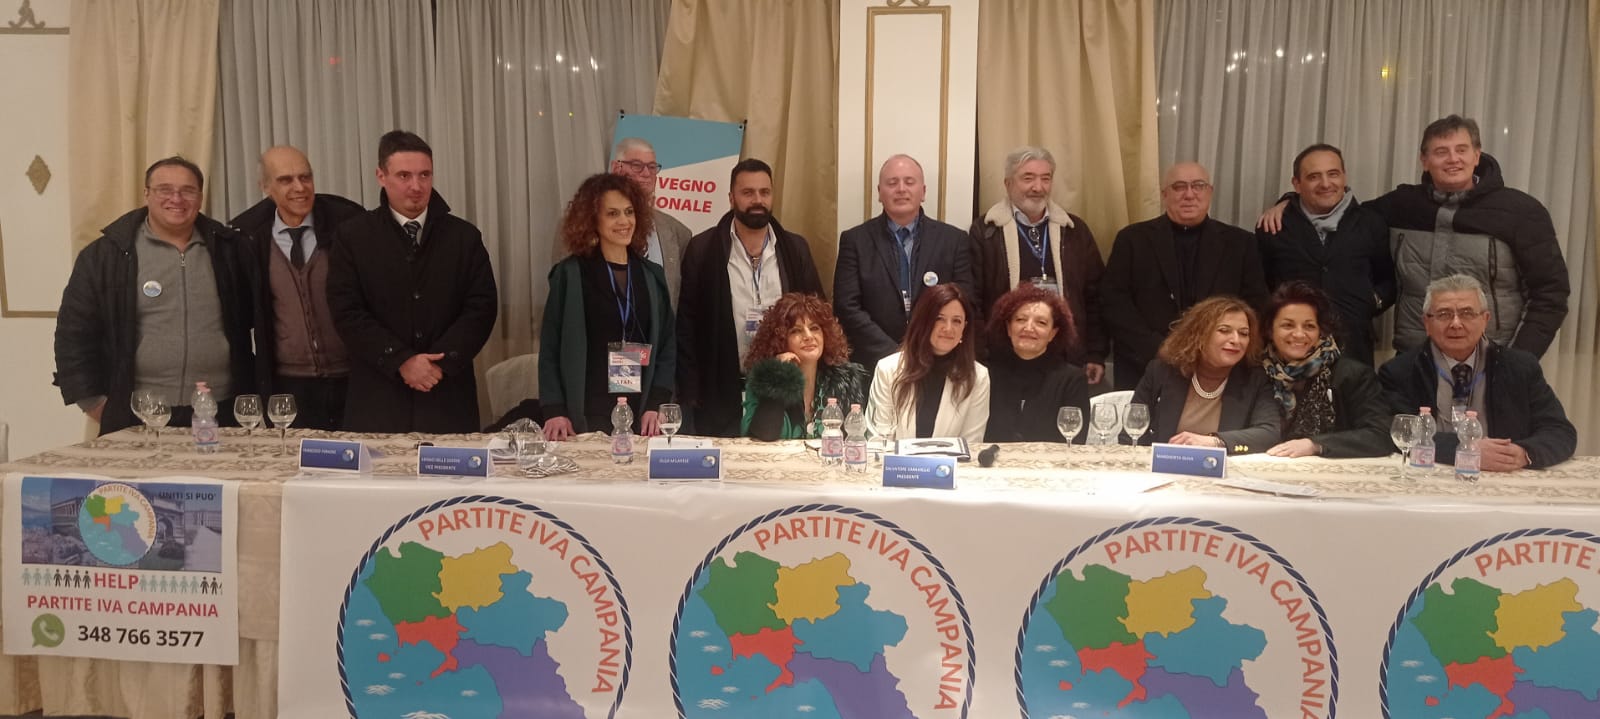 Terzigno: I convegno nazionale su Partite Iva in Campania